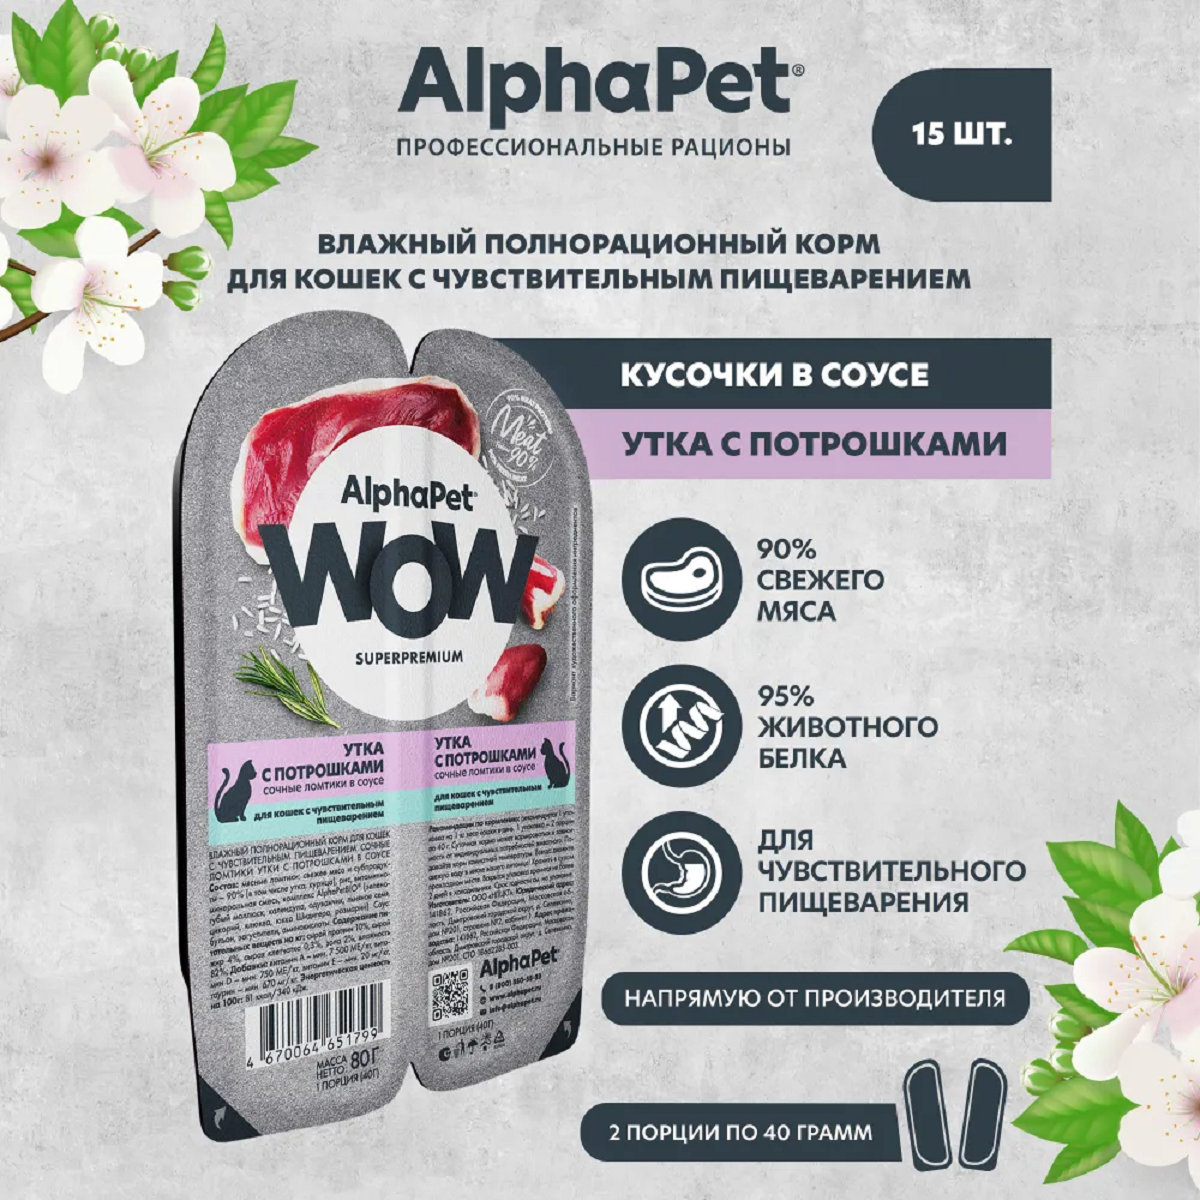 AlphaPet WOW пауч для кошек с чувствительным пищеварением ломтики в соусе Утка с потрошками 80г (15 штук)